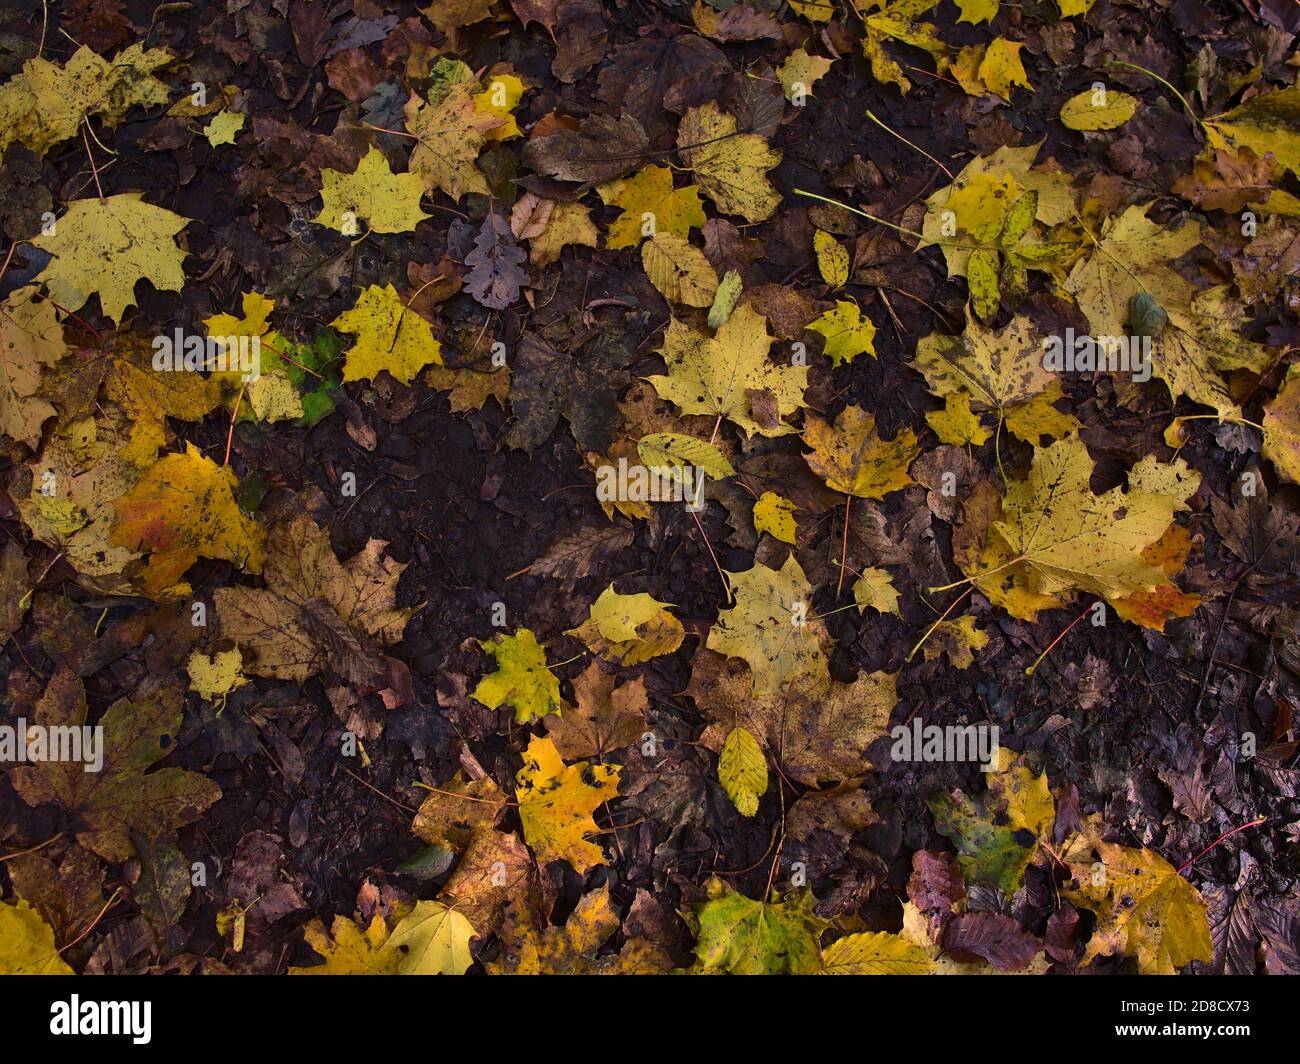 Fogliame misto di alberi diversi (ad es. Acero, faggio) con foglie gialle appassite e scolorite su terreno forestale in autunno. Foto Stock